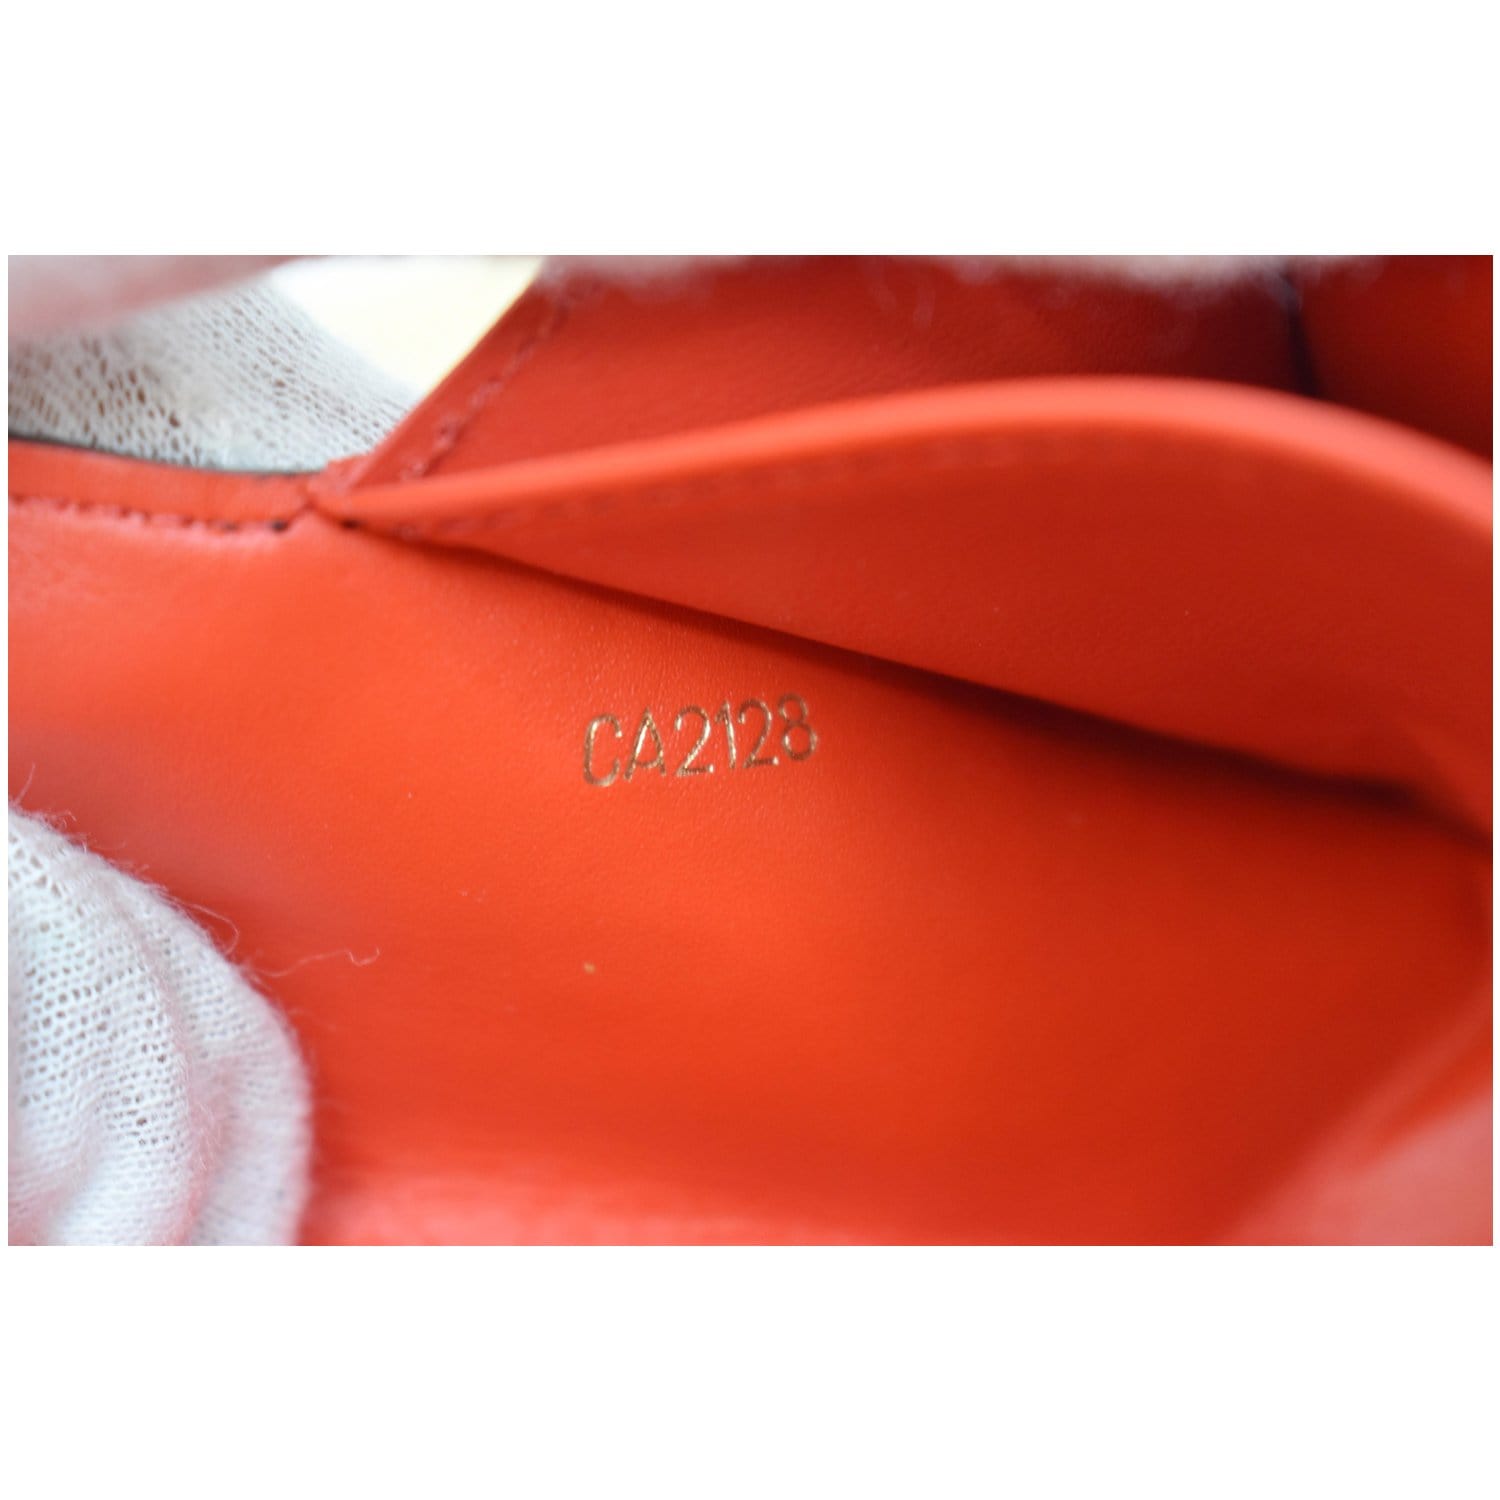 Louis Vuitton 2015 LV Monogram Pouch - Red Wallets, Accessories - LOU786656